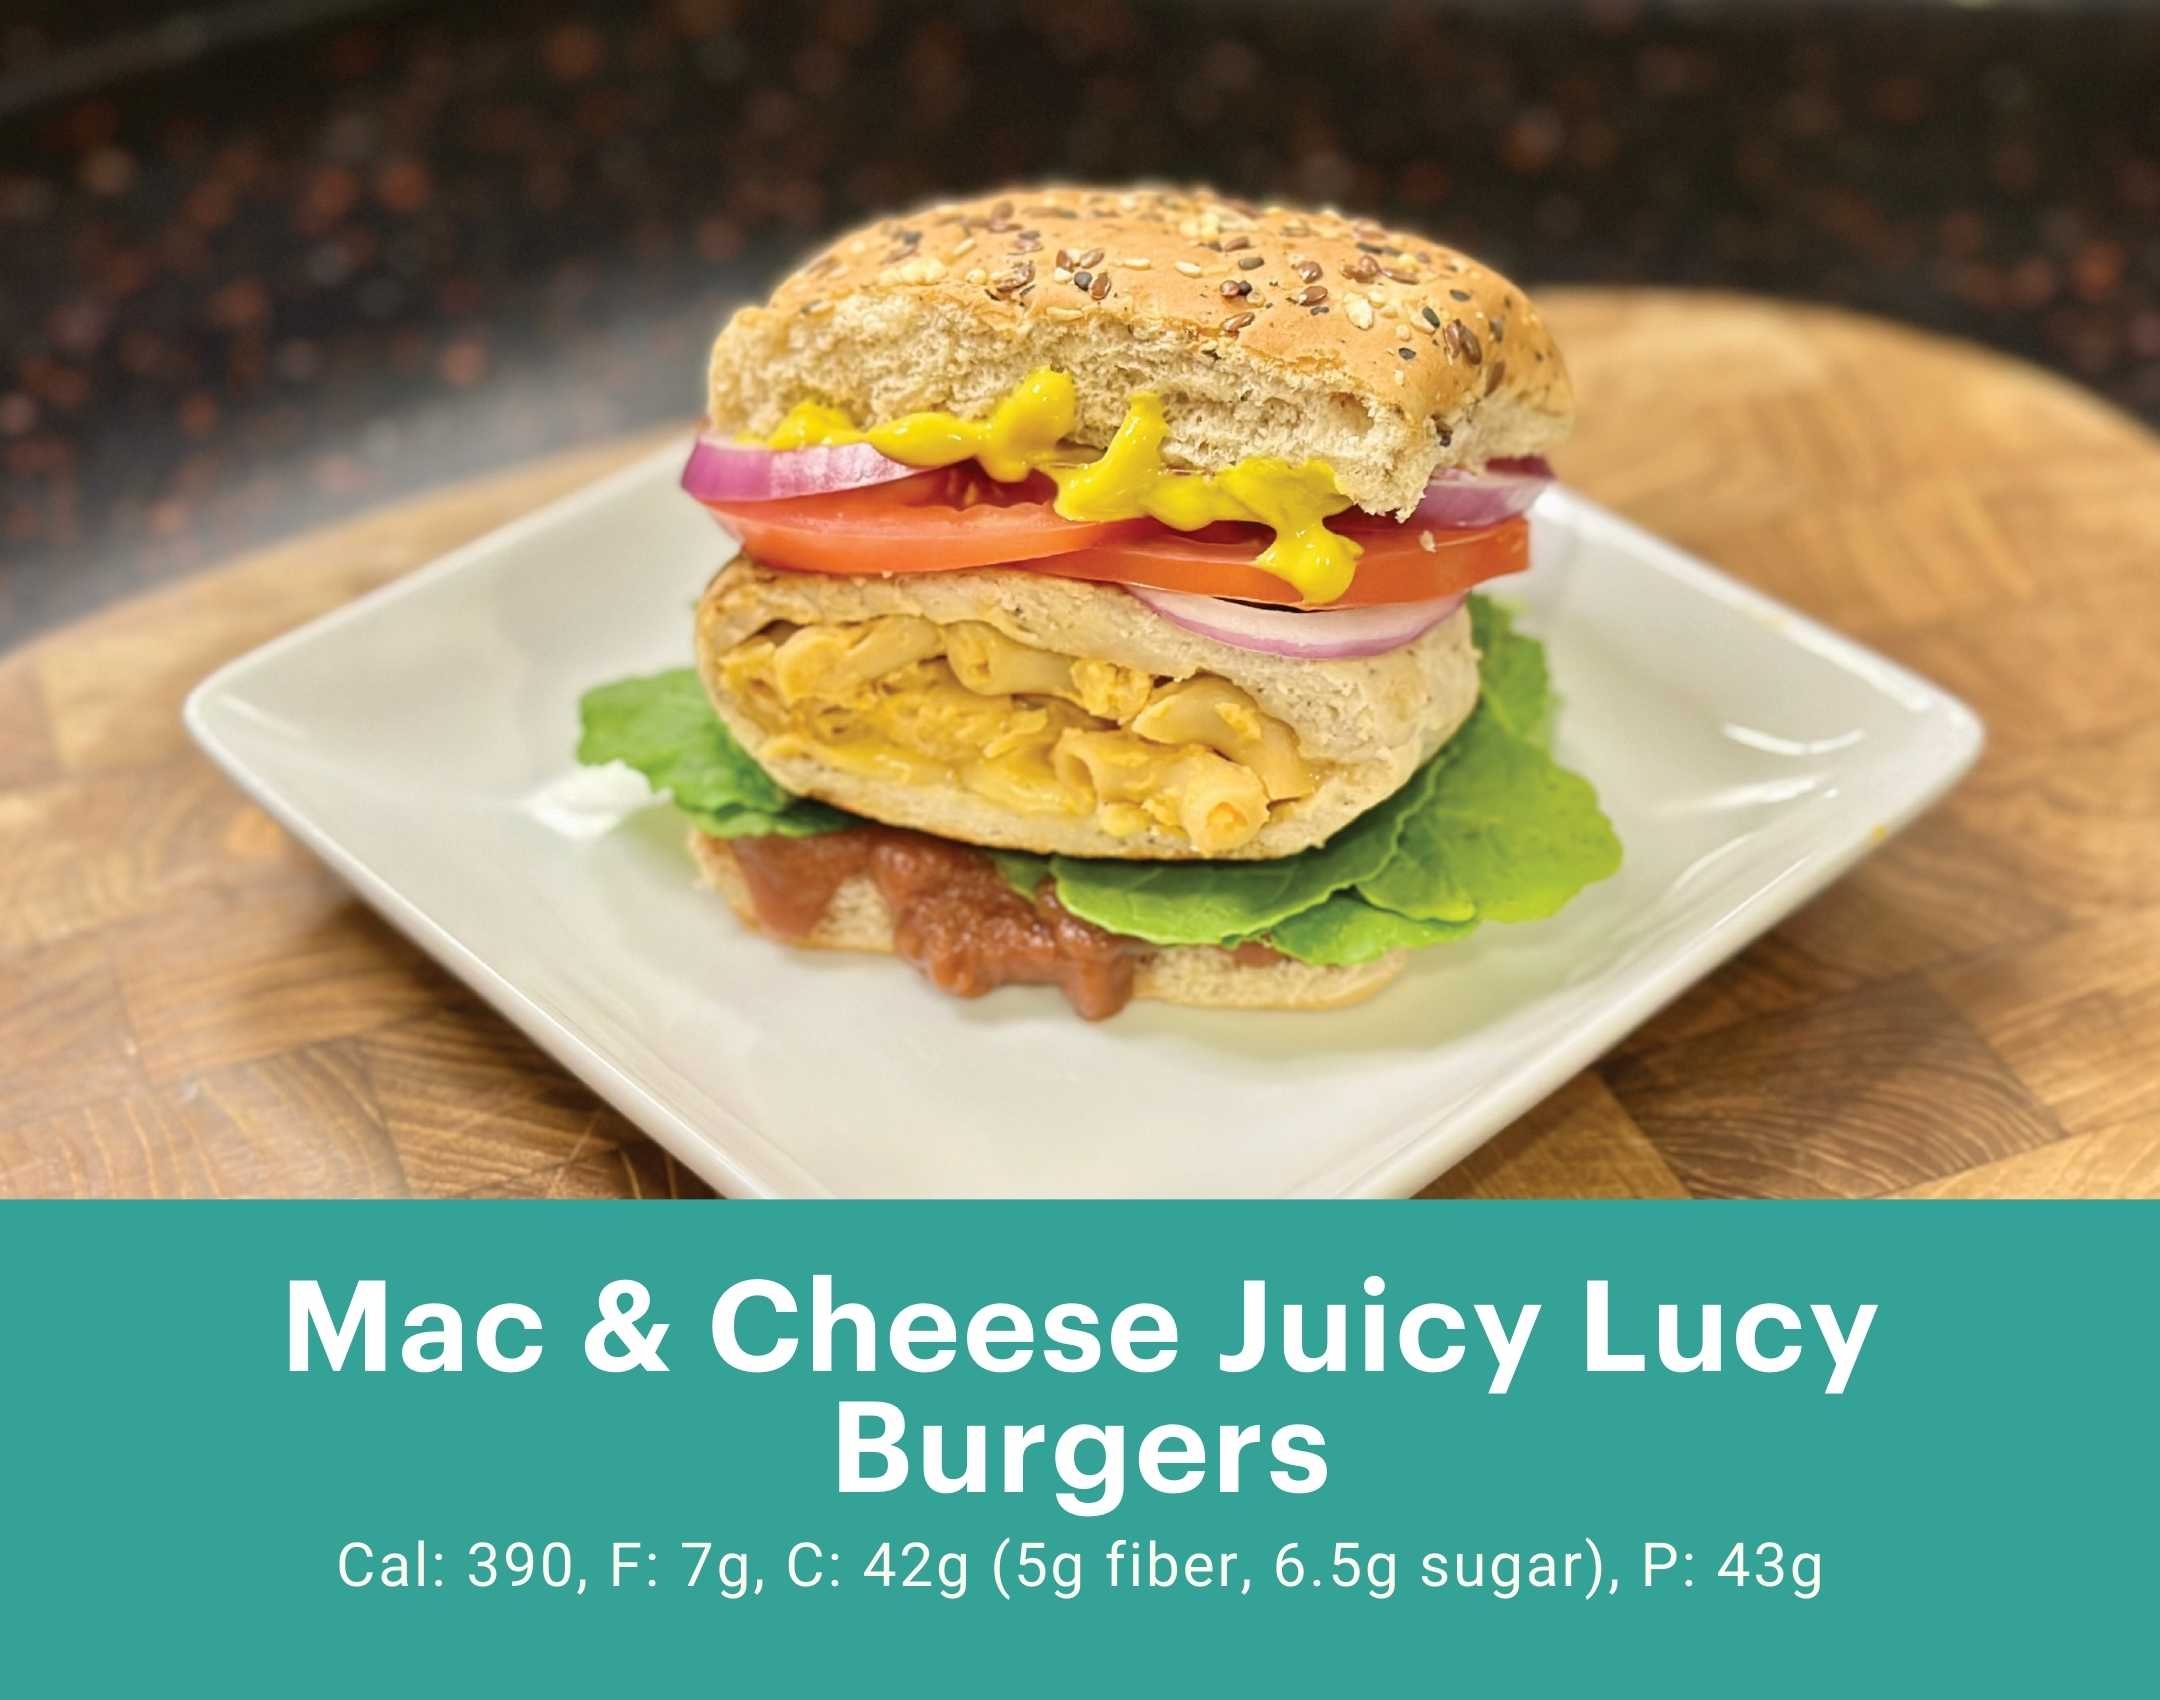 Mac & Cheese Juicy Lucy Burgers.jpg